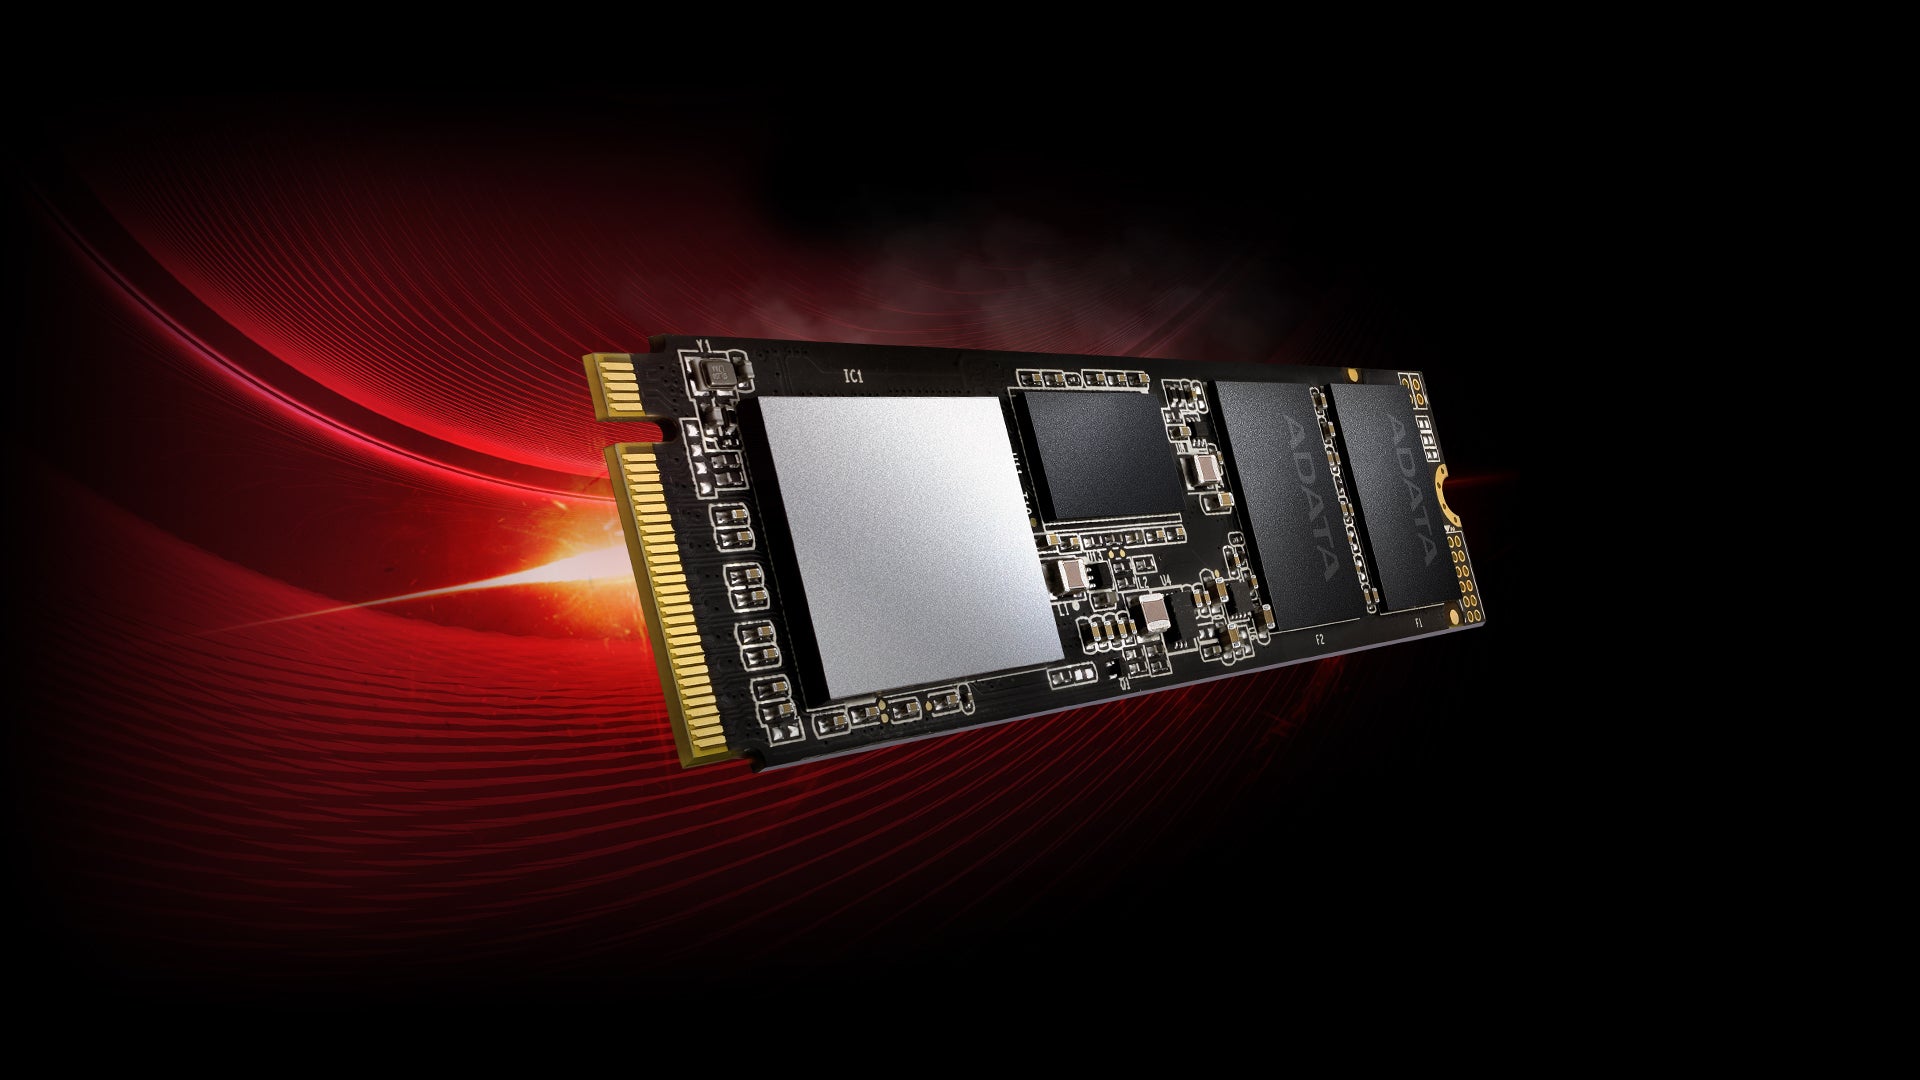 ADATA XPG SSD 512GB รุ่น SX8200 PRO PCIE GEN3X4 M.2 2280 ประกัน 5 ปี